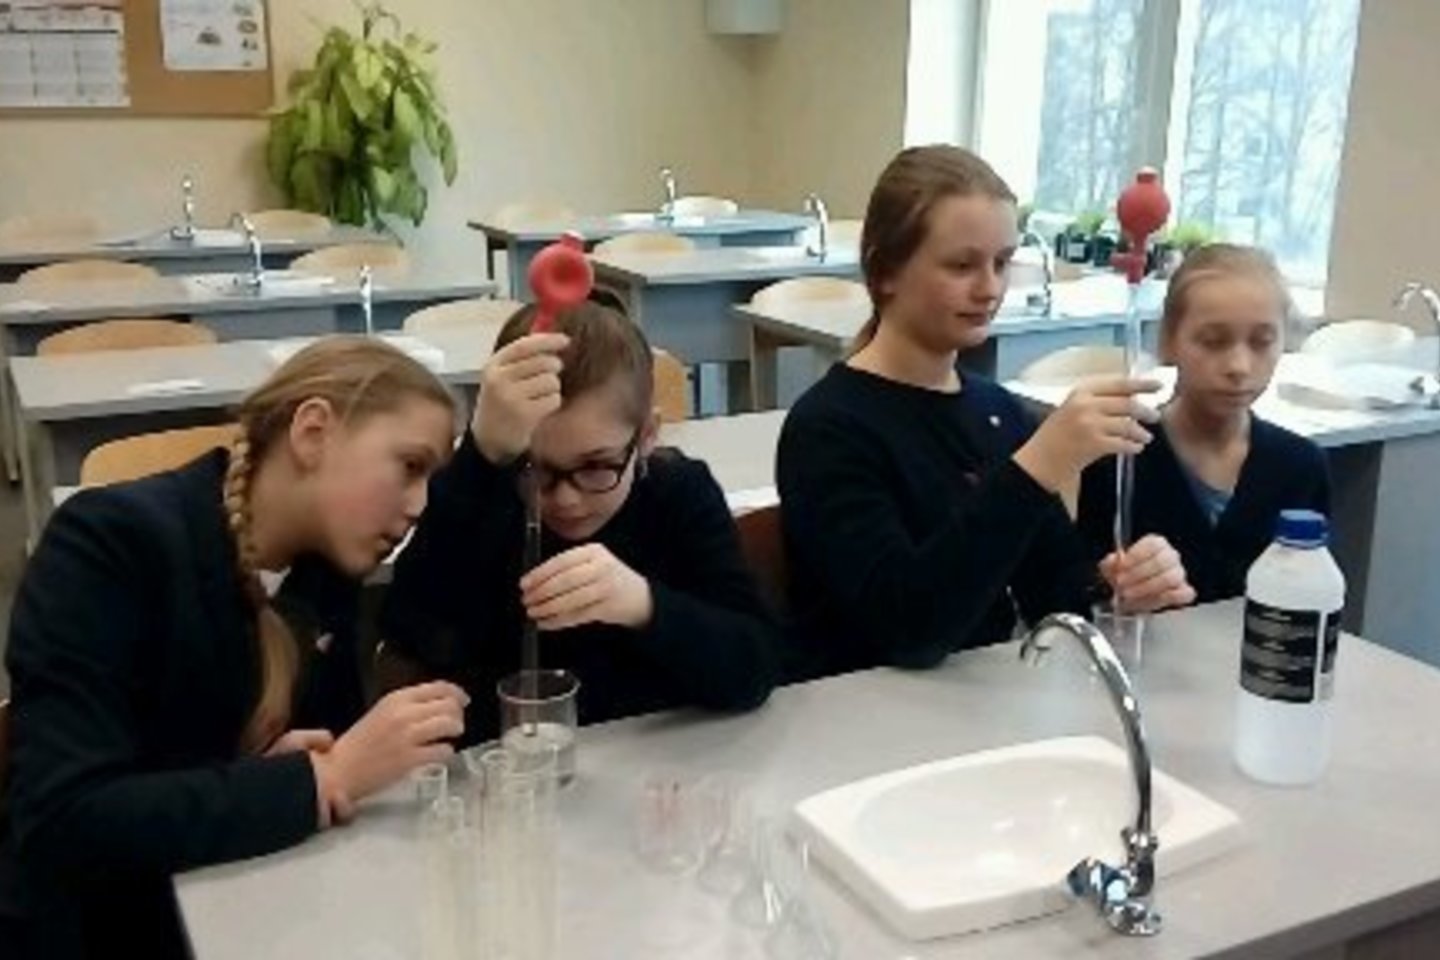  Birštono gimnazijos mokiniai pamėgo chemiją. Jie noriai leidžiasi į eksperimentus. <br> Birštono gimnazijos nuotr. 